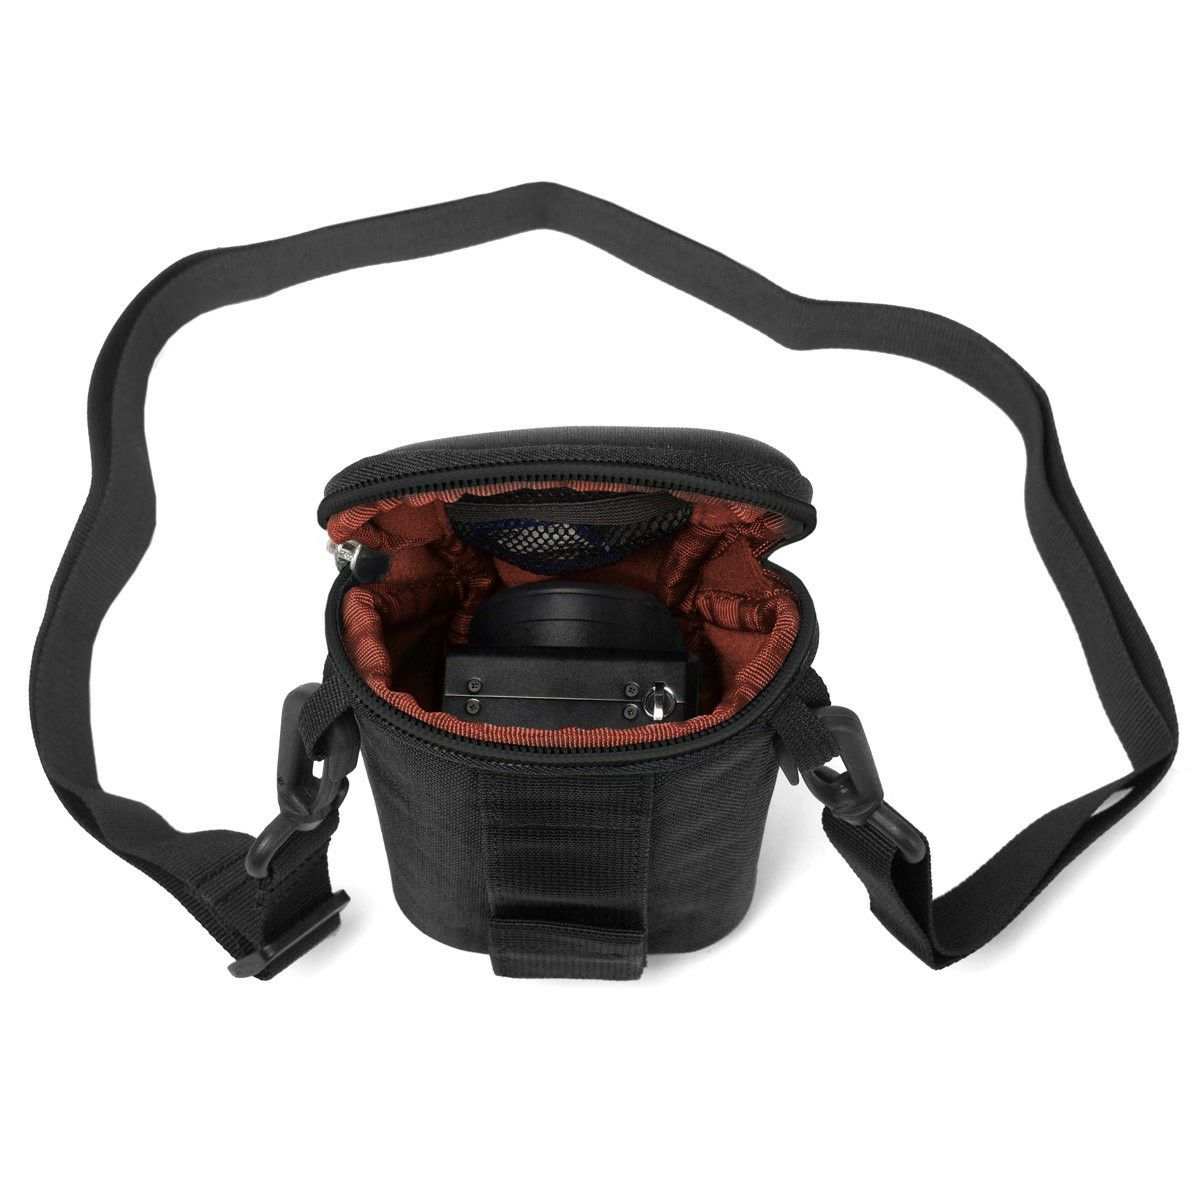 Crumpler Base Layer Camera Pouch M black rust red (BLCP-M-001) crna hrđavo crvena torba za fotoaparat